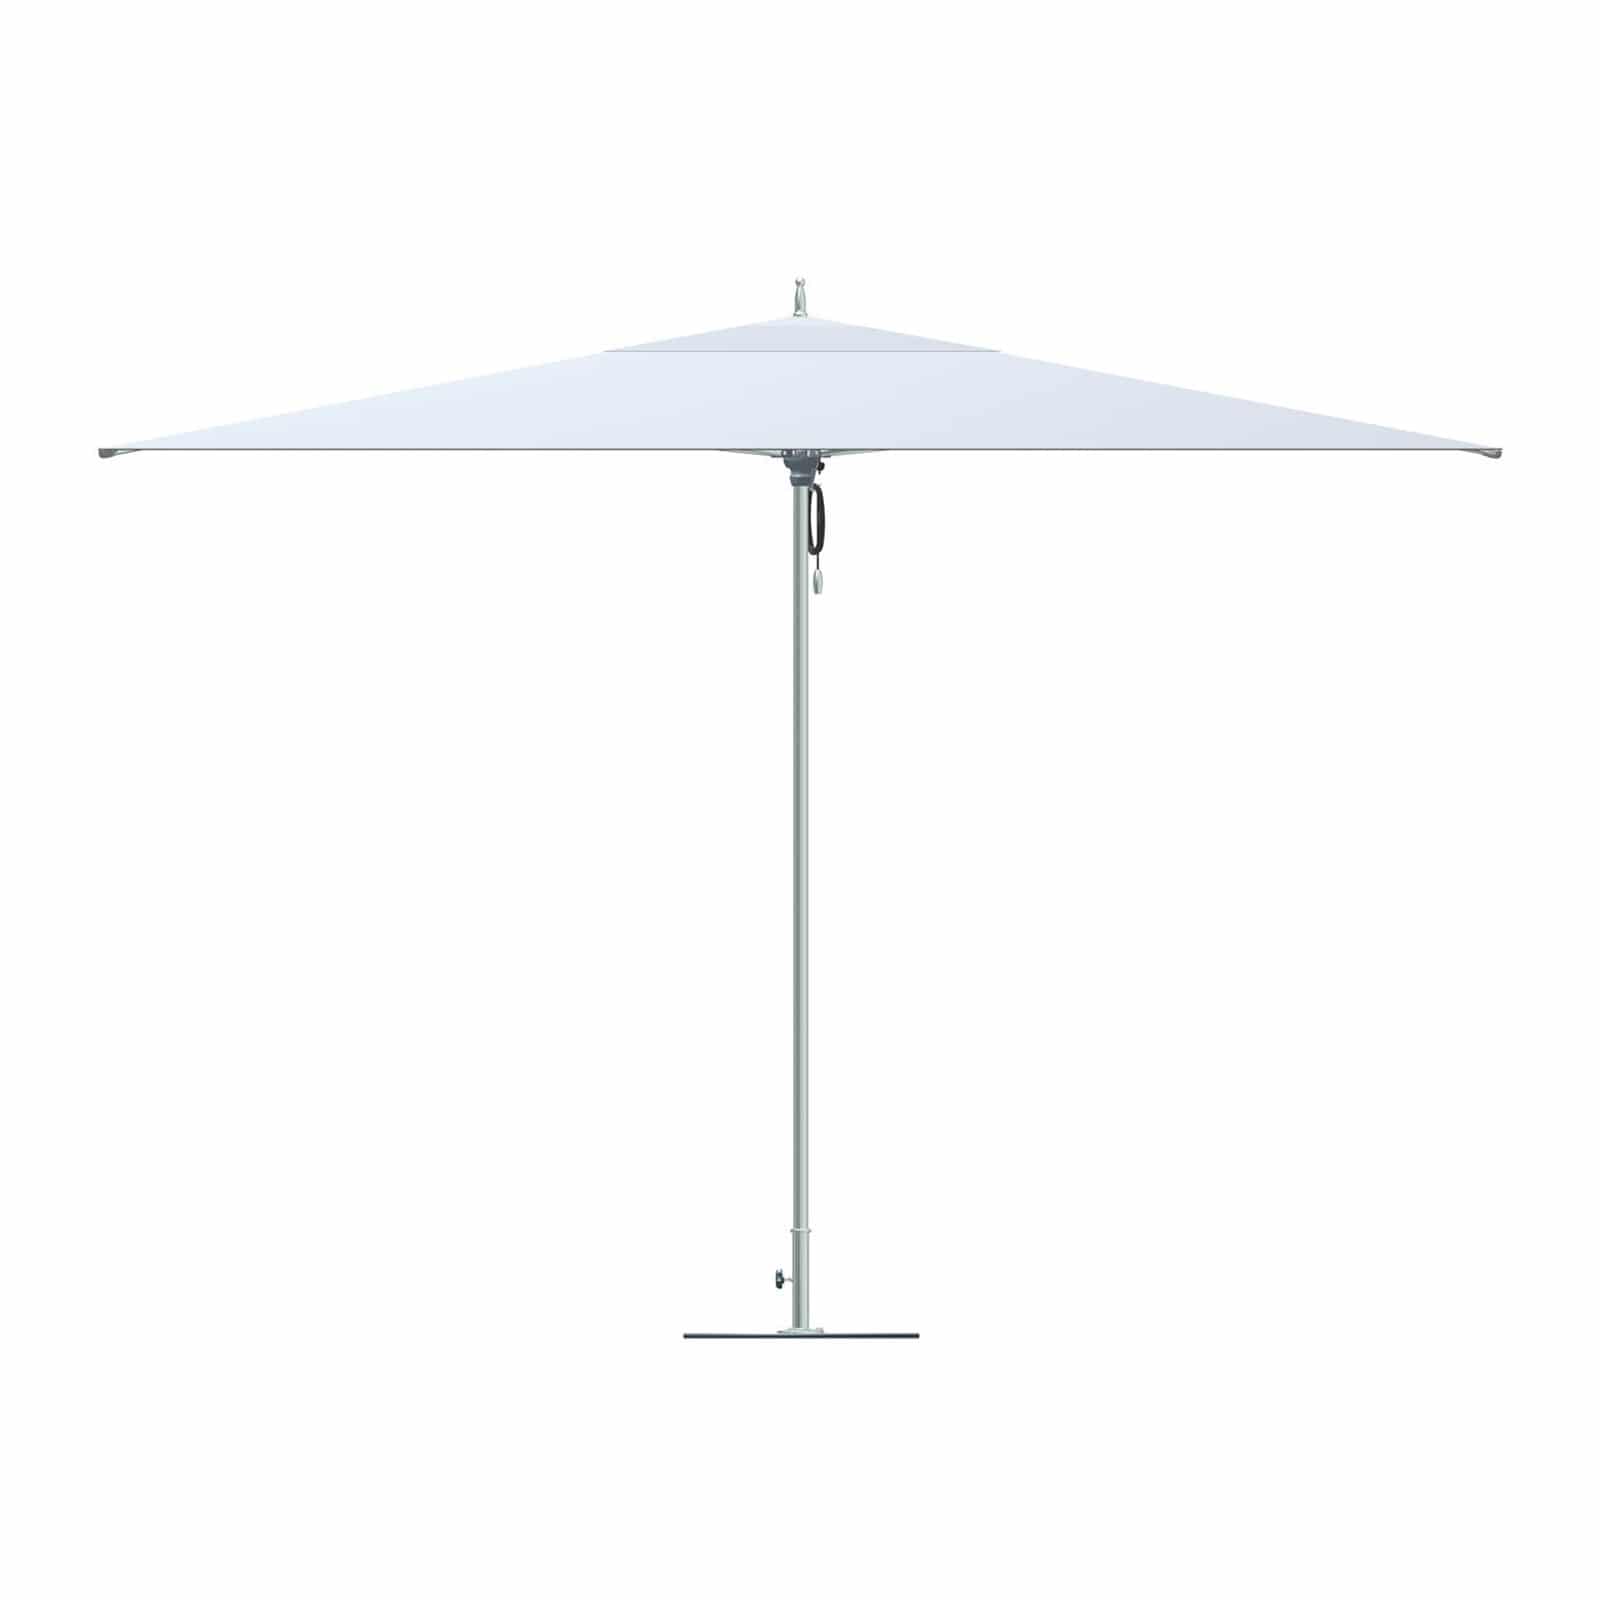 Tuuci Ocean Master Classic Umbrella, Commercial - White